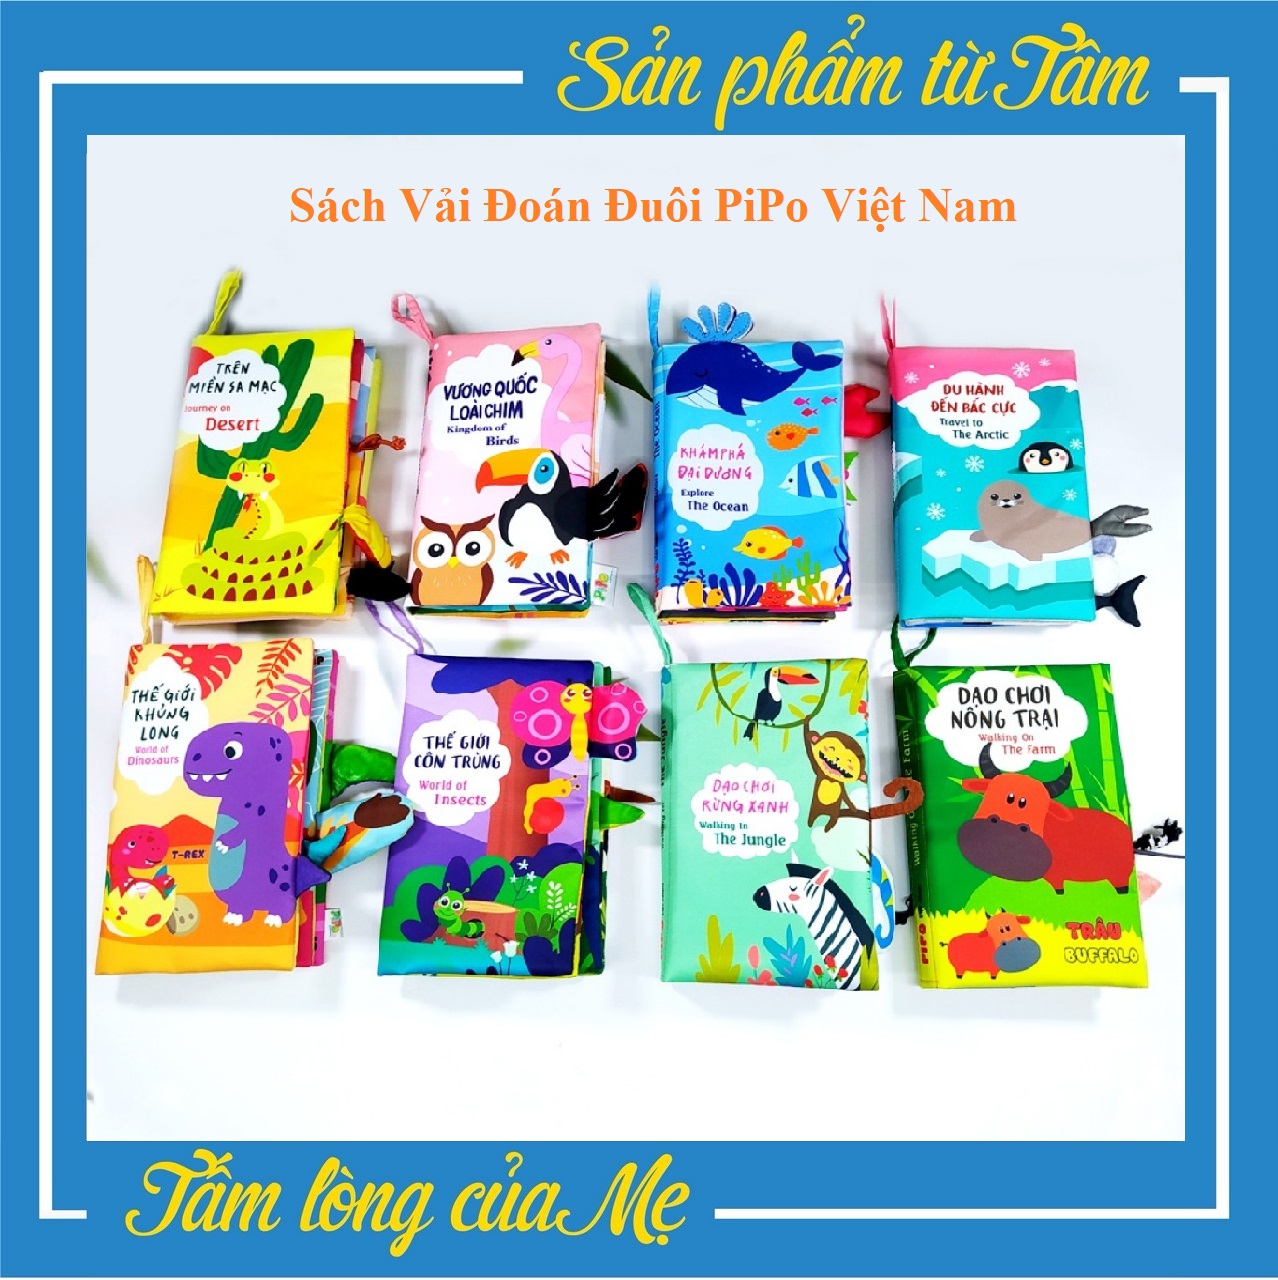 Sách Vải Đoán Đuôi PiPo Việt Nam An Toàn Cho Bé Từ 6 Tháng Tuổi